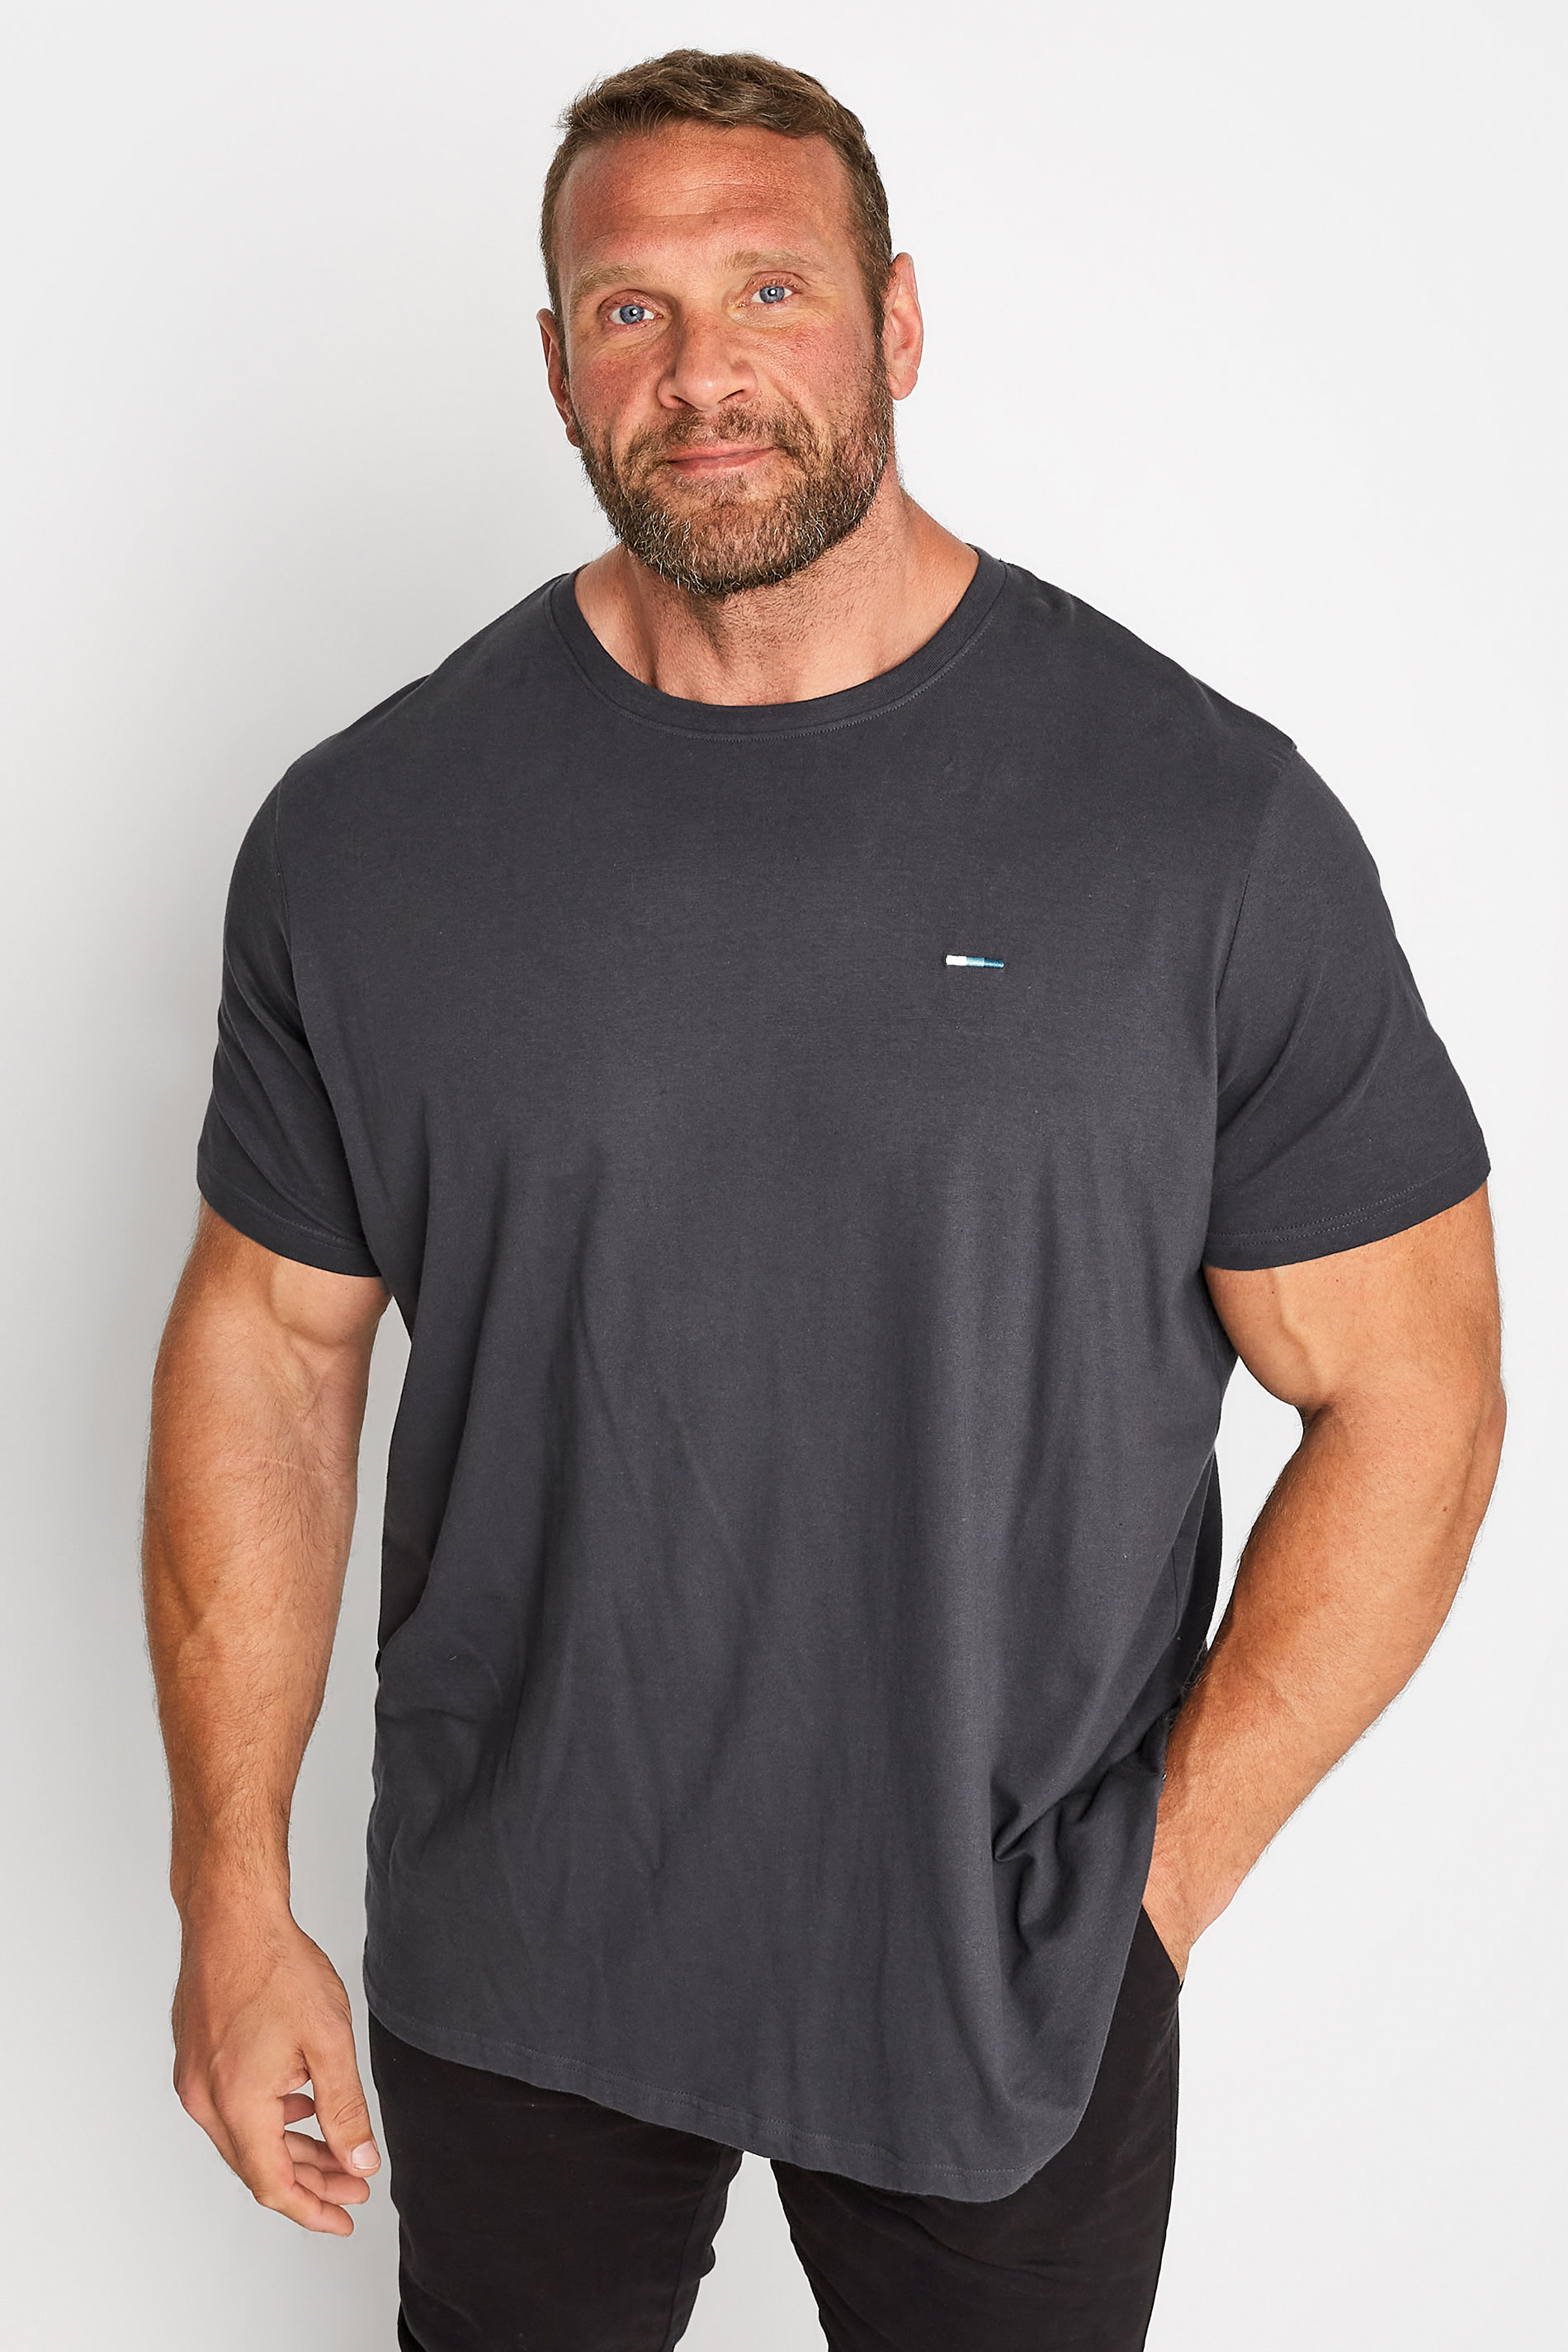 BadRhino Big & Tall Dark Grey Plain T-Shirt | BadRhino 1